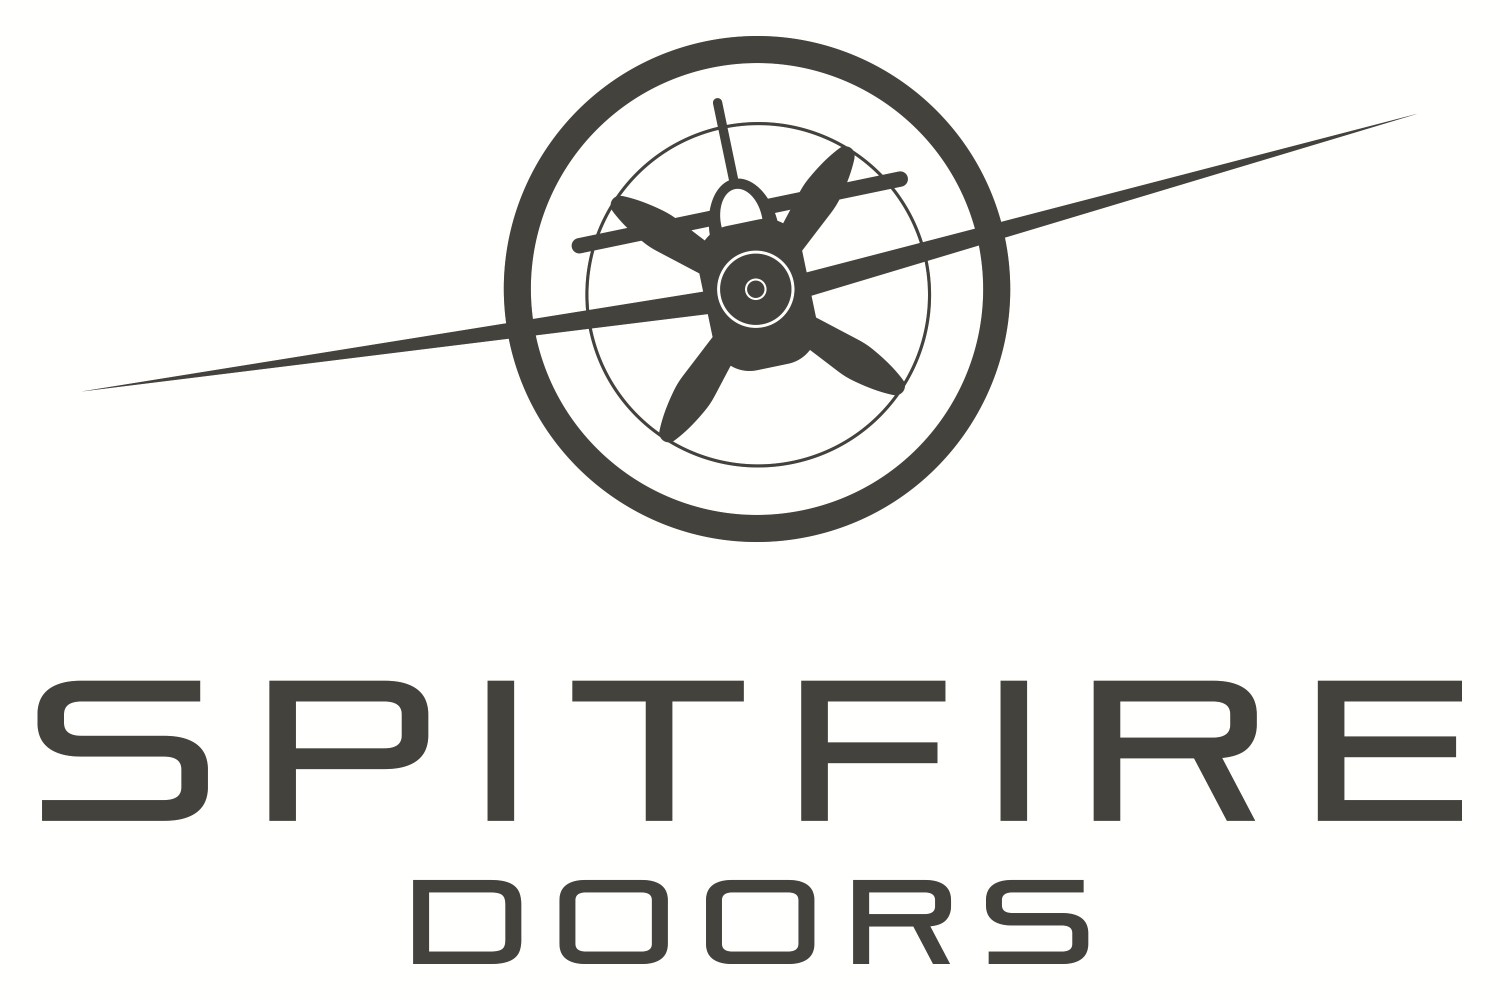 Spitfire doors Cardiff swansea